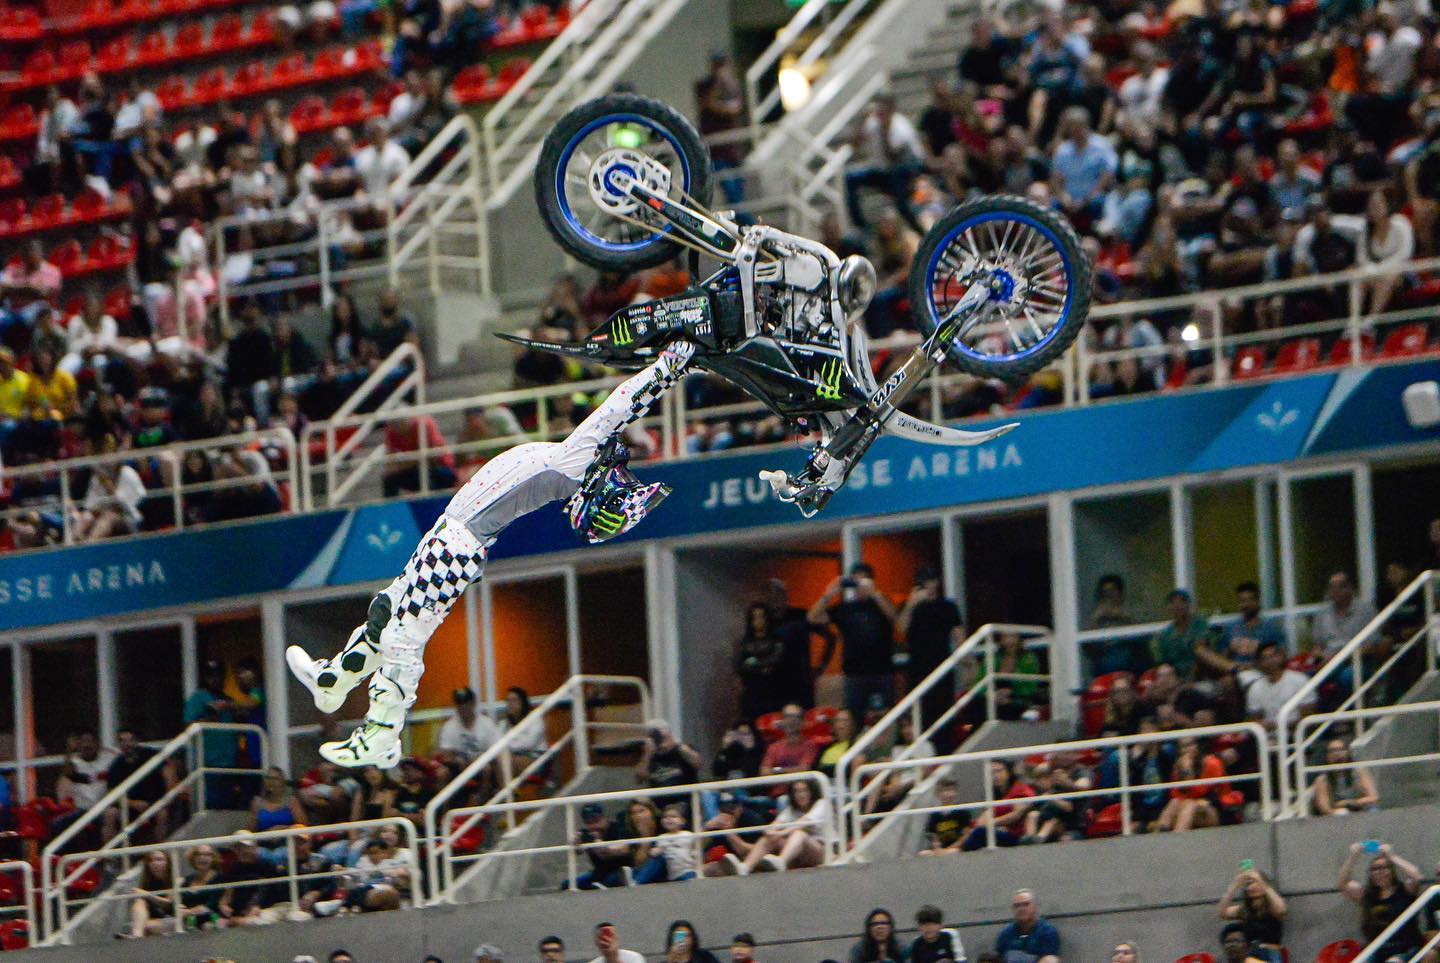 Rio Freestyle Motocross 2022 atraiu mais de 6 mil pessoas em Arena no Rio de Janeiro. Piloto japonês venceu o evento internacional